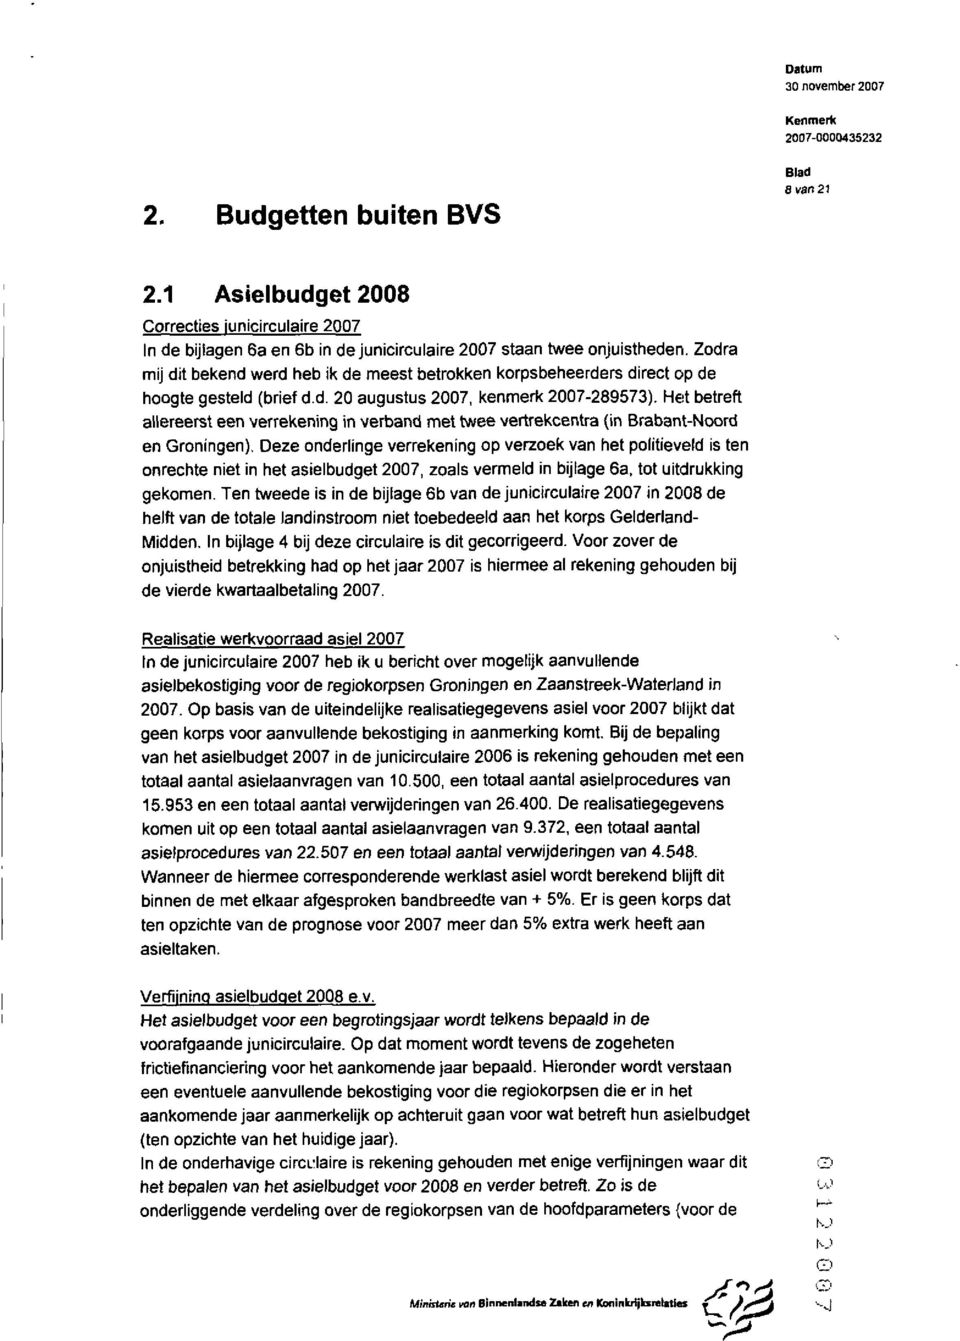 Het betreft allereerst een verrekening in verband met twee vertrekcentra (in BrabantNoord en Groningen).